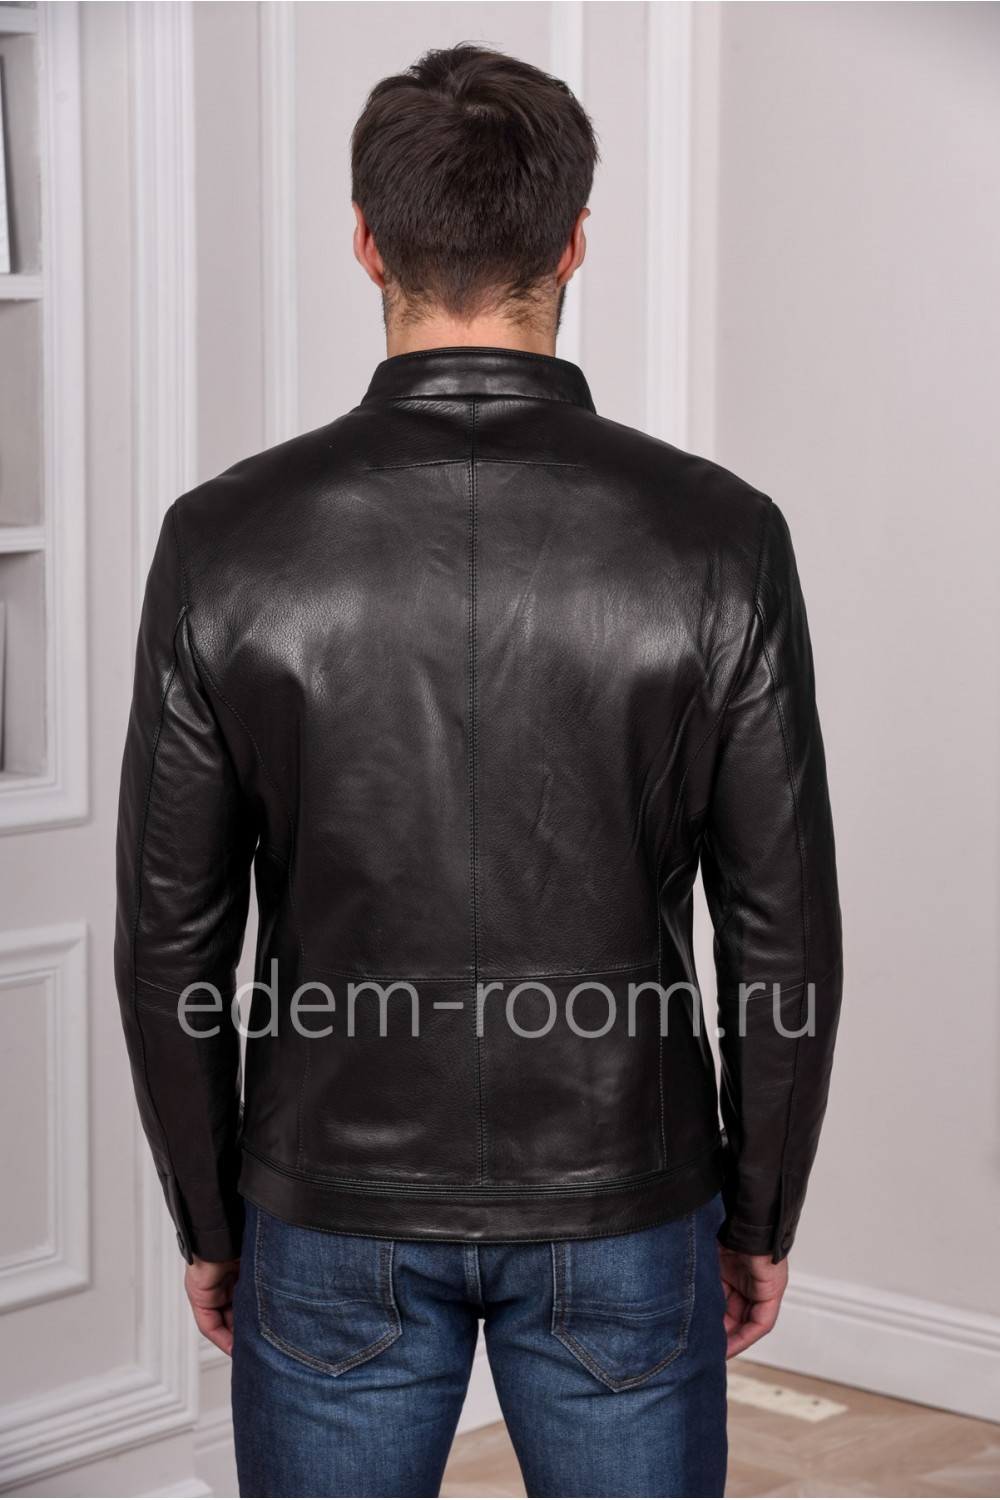 Мужская кожаная куртка из натуральной кожи черного цвета